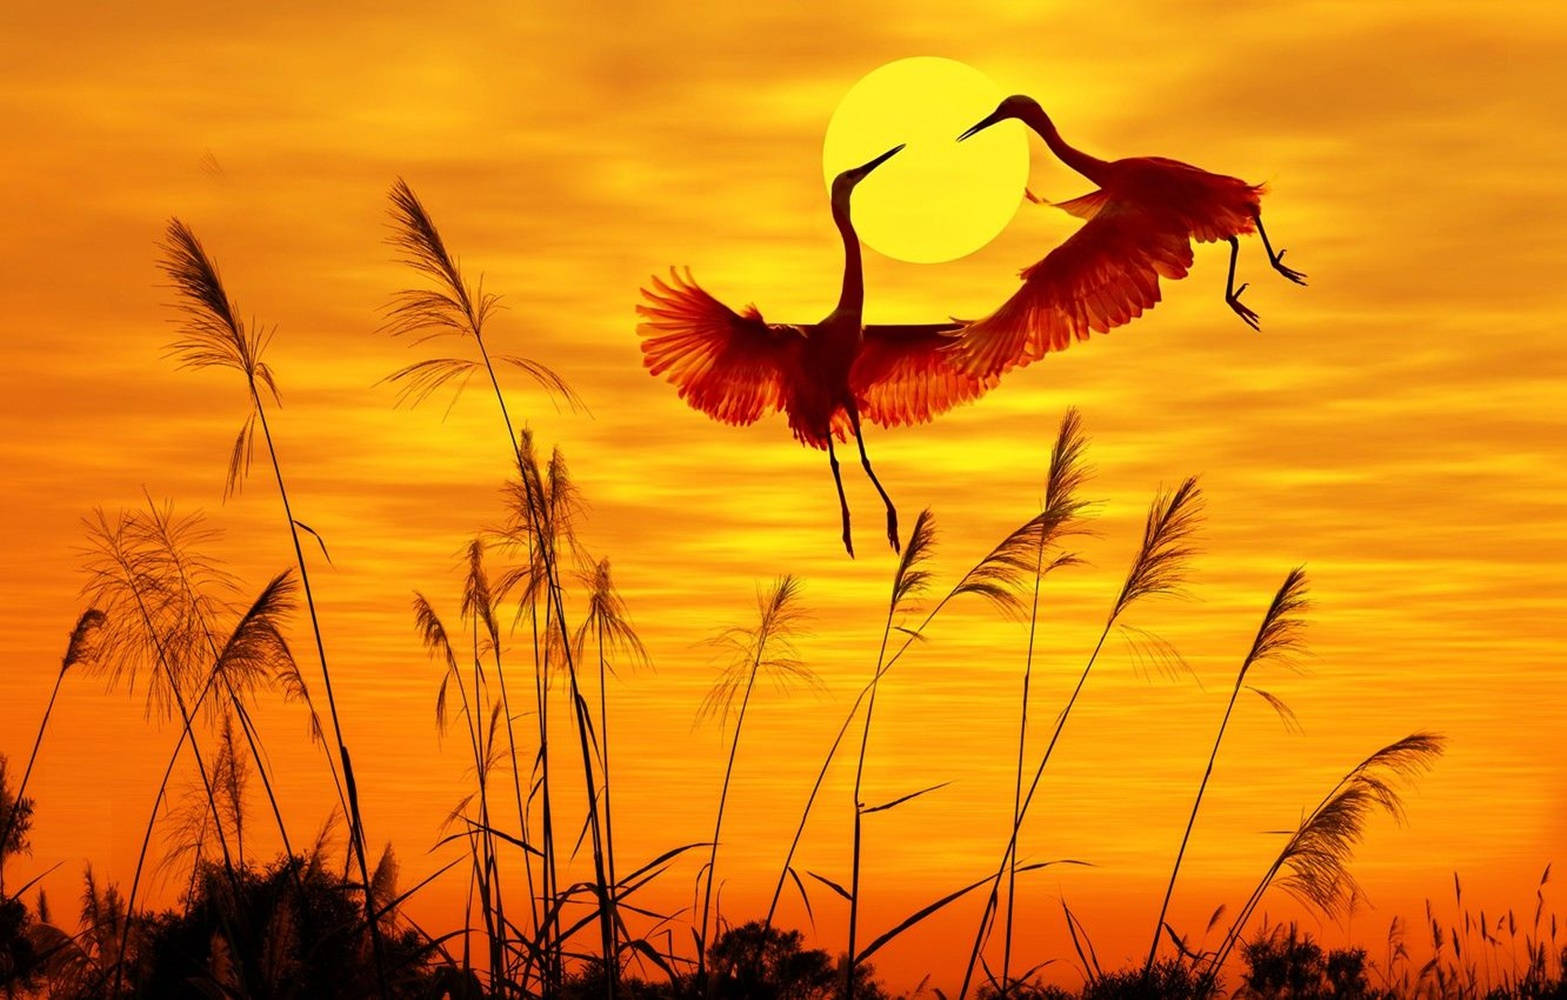 Stork Lover Birds Flying Against Sunset Wallpaper